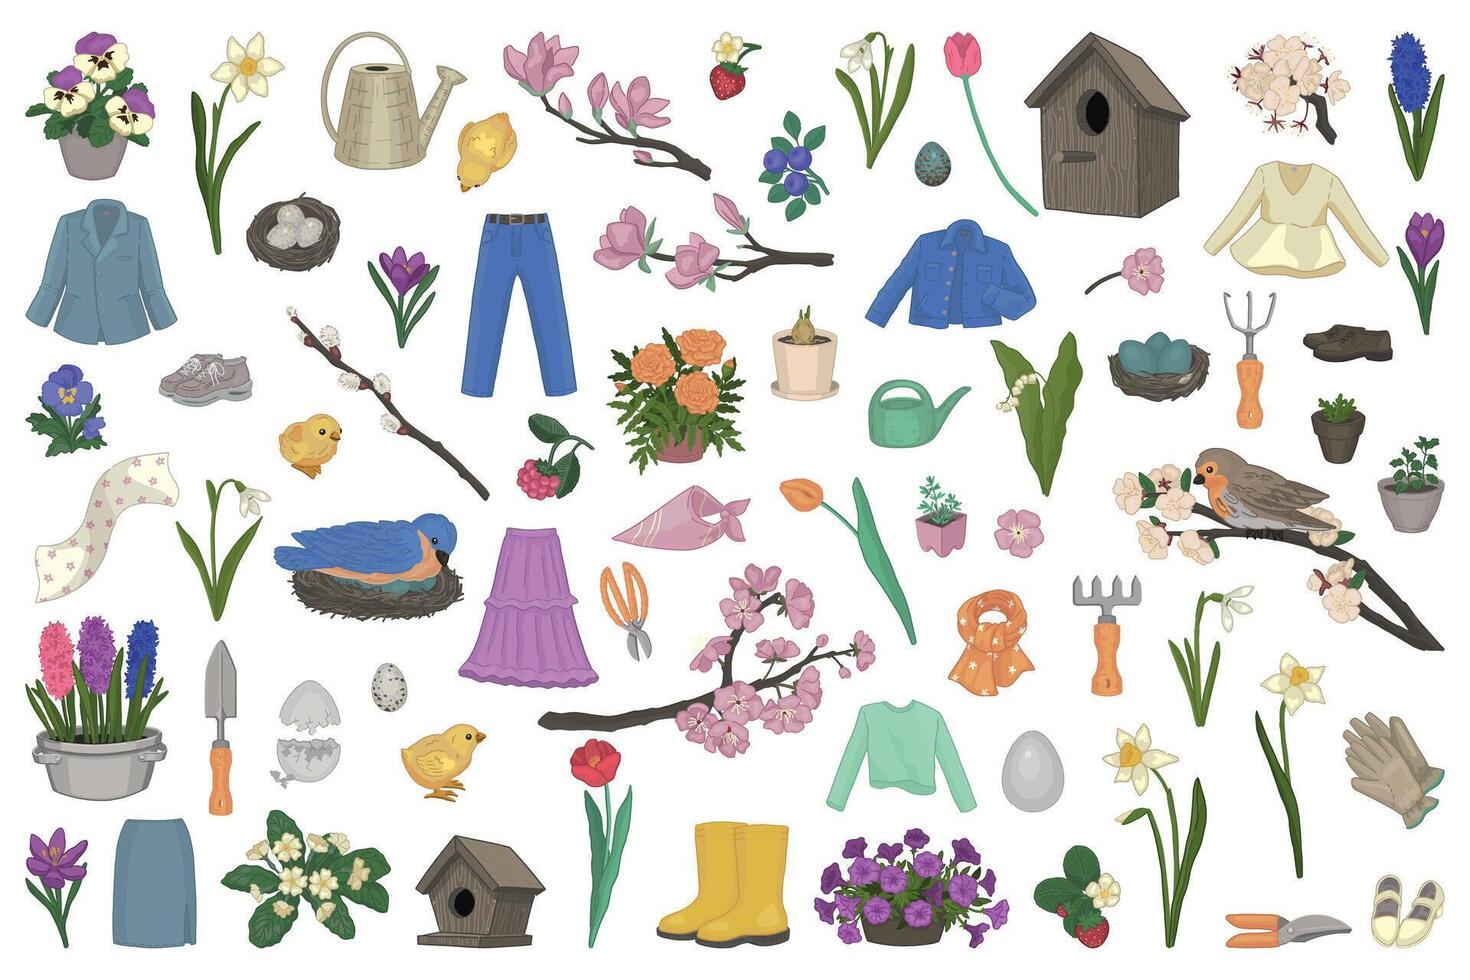 Frühling Zeit Clip Art Sammlung. einstellen von Beeren, Vögel, Gartenarbeit, Pflanzen, Zubehör, Kleidung. Karikatur Vektor Abbildungen isoliert auf Weiß.